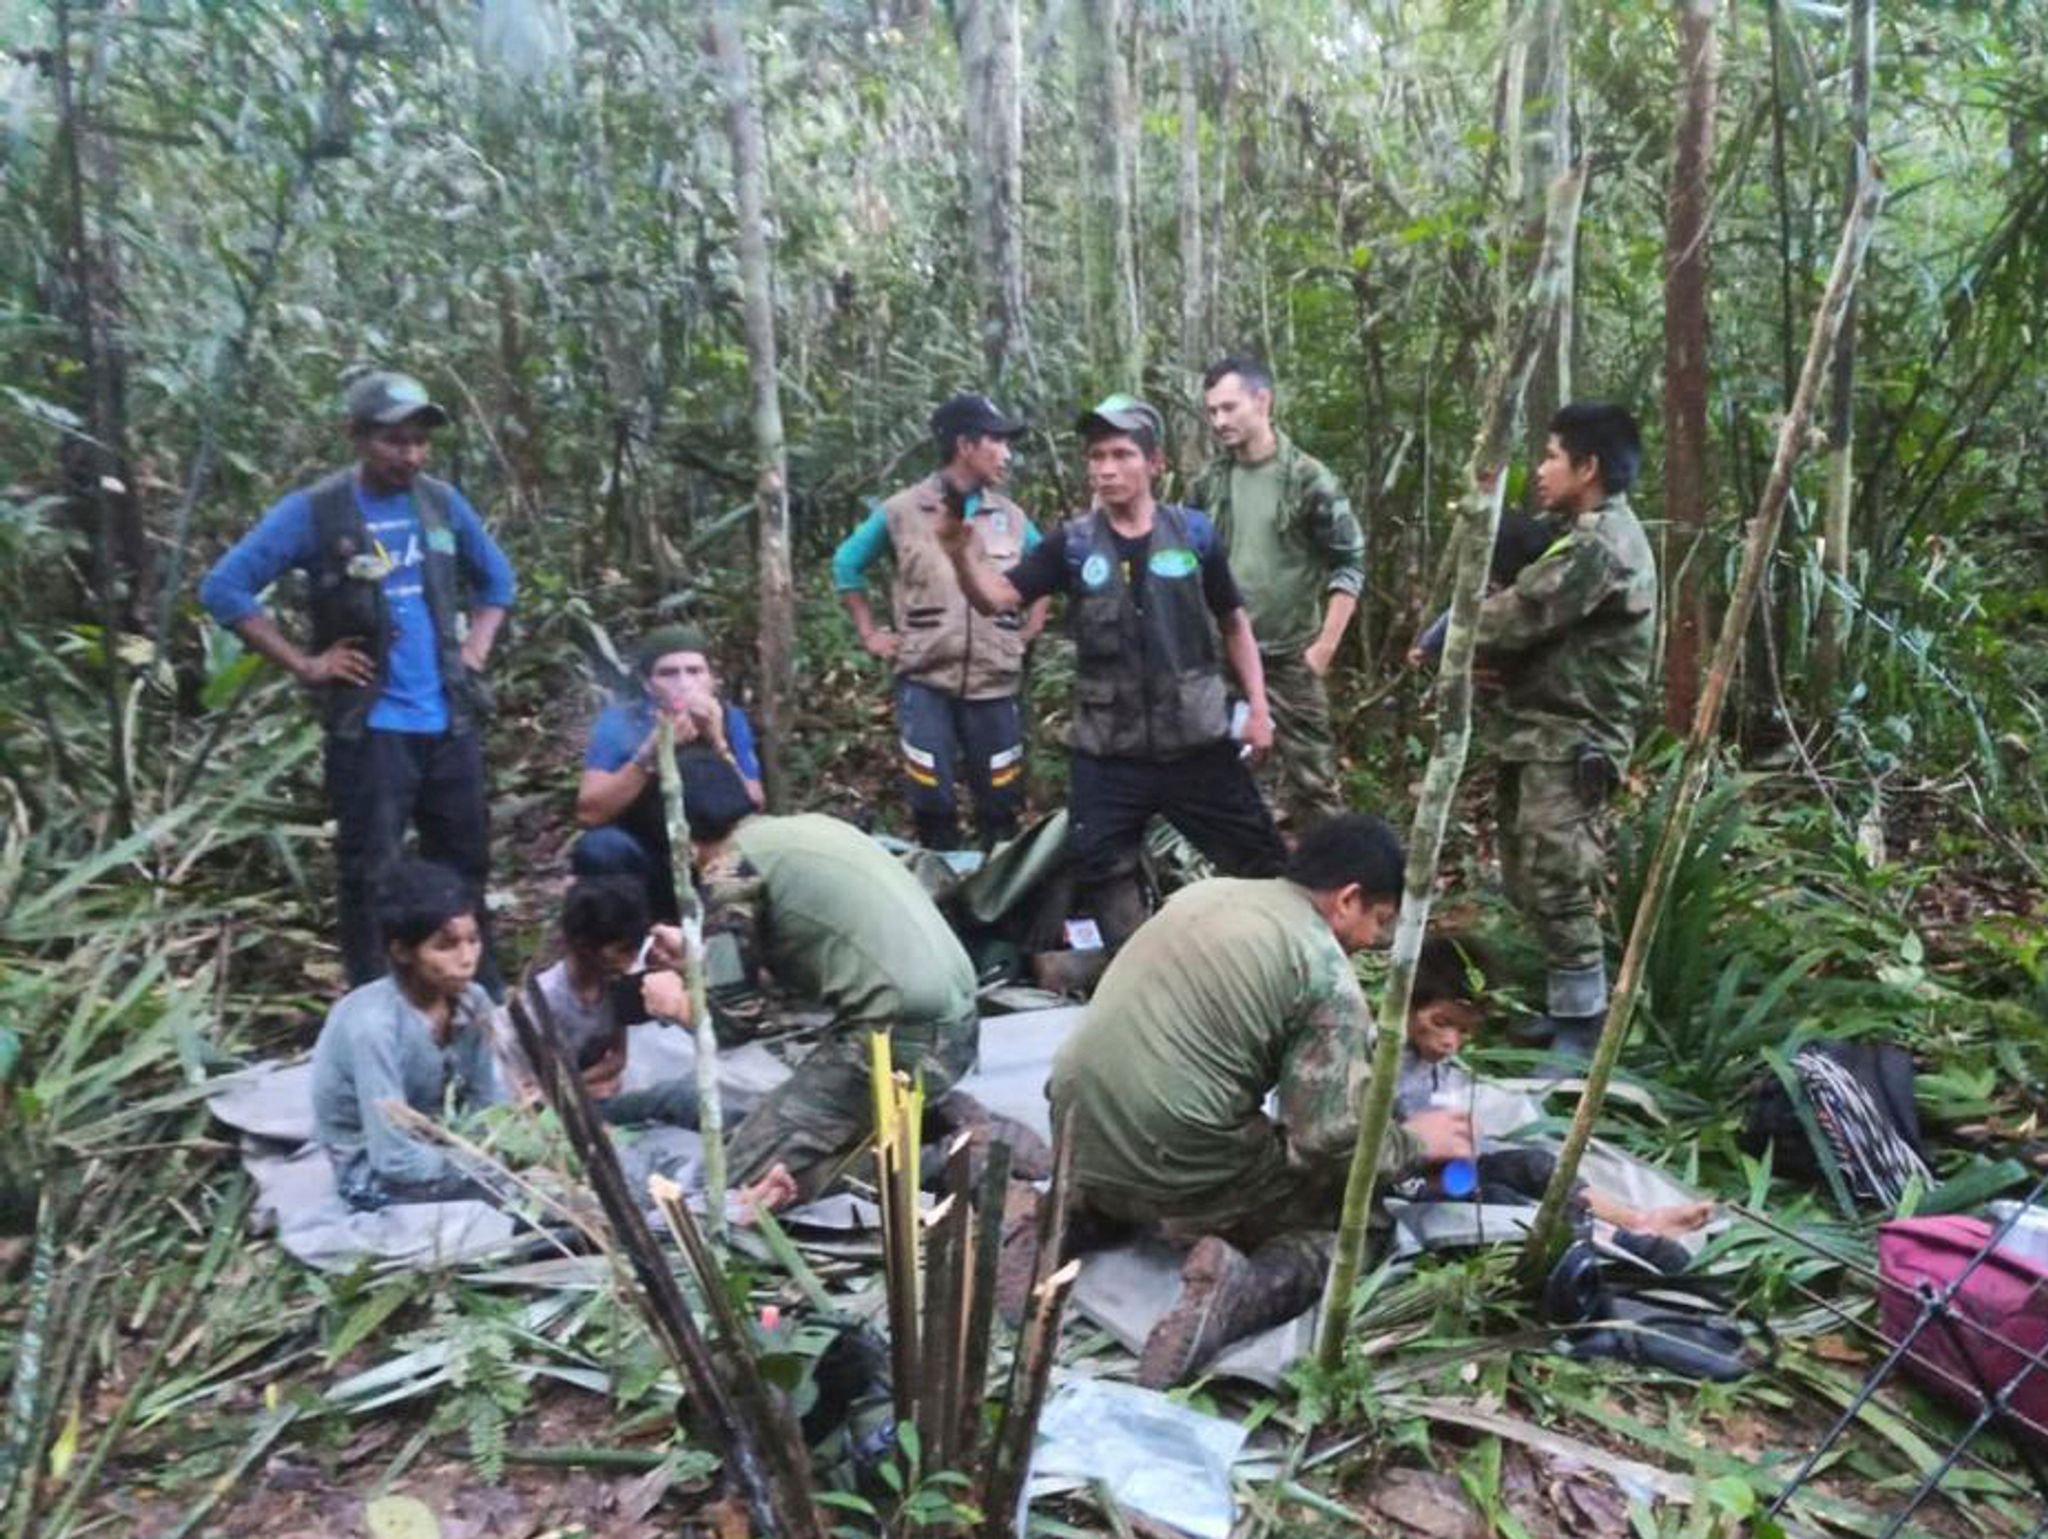 Wunder im Amazonas: Kinder nach Flugzeugabsturz gerettet